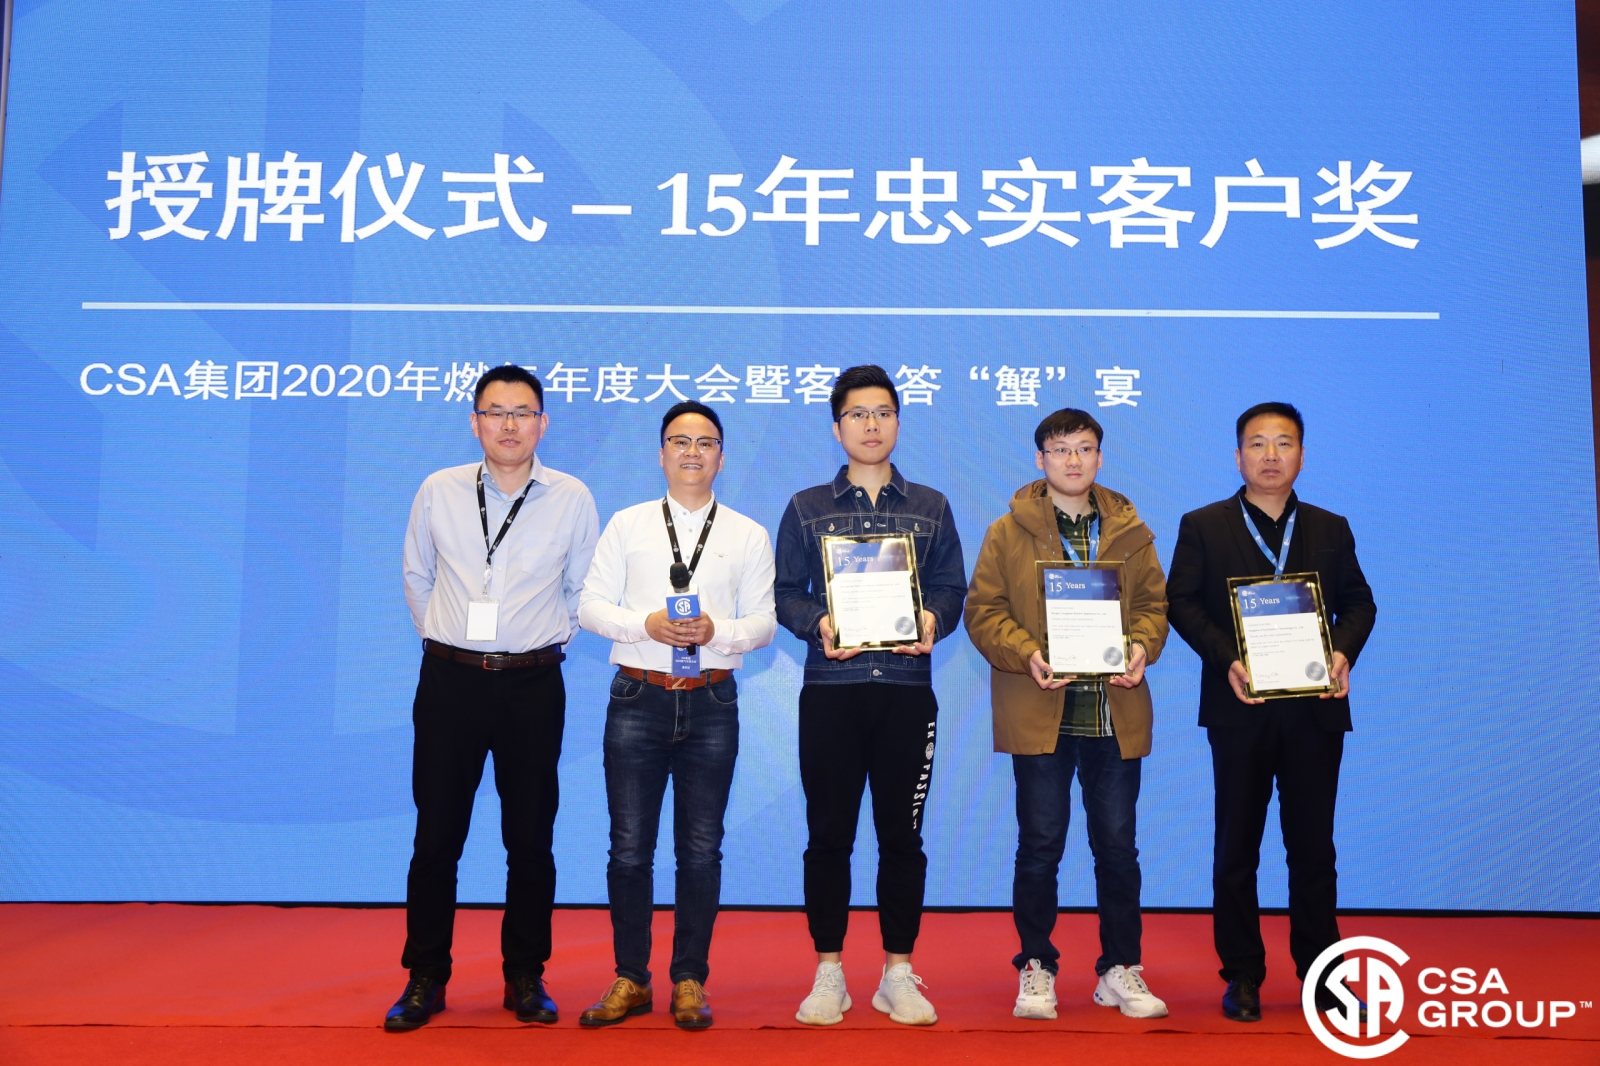 Die jaarlikse konferensie van CSA Gas Customers is in Kunshan gehou